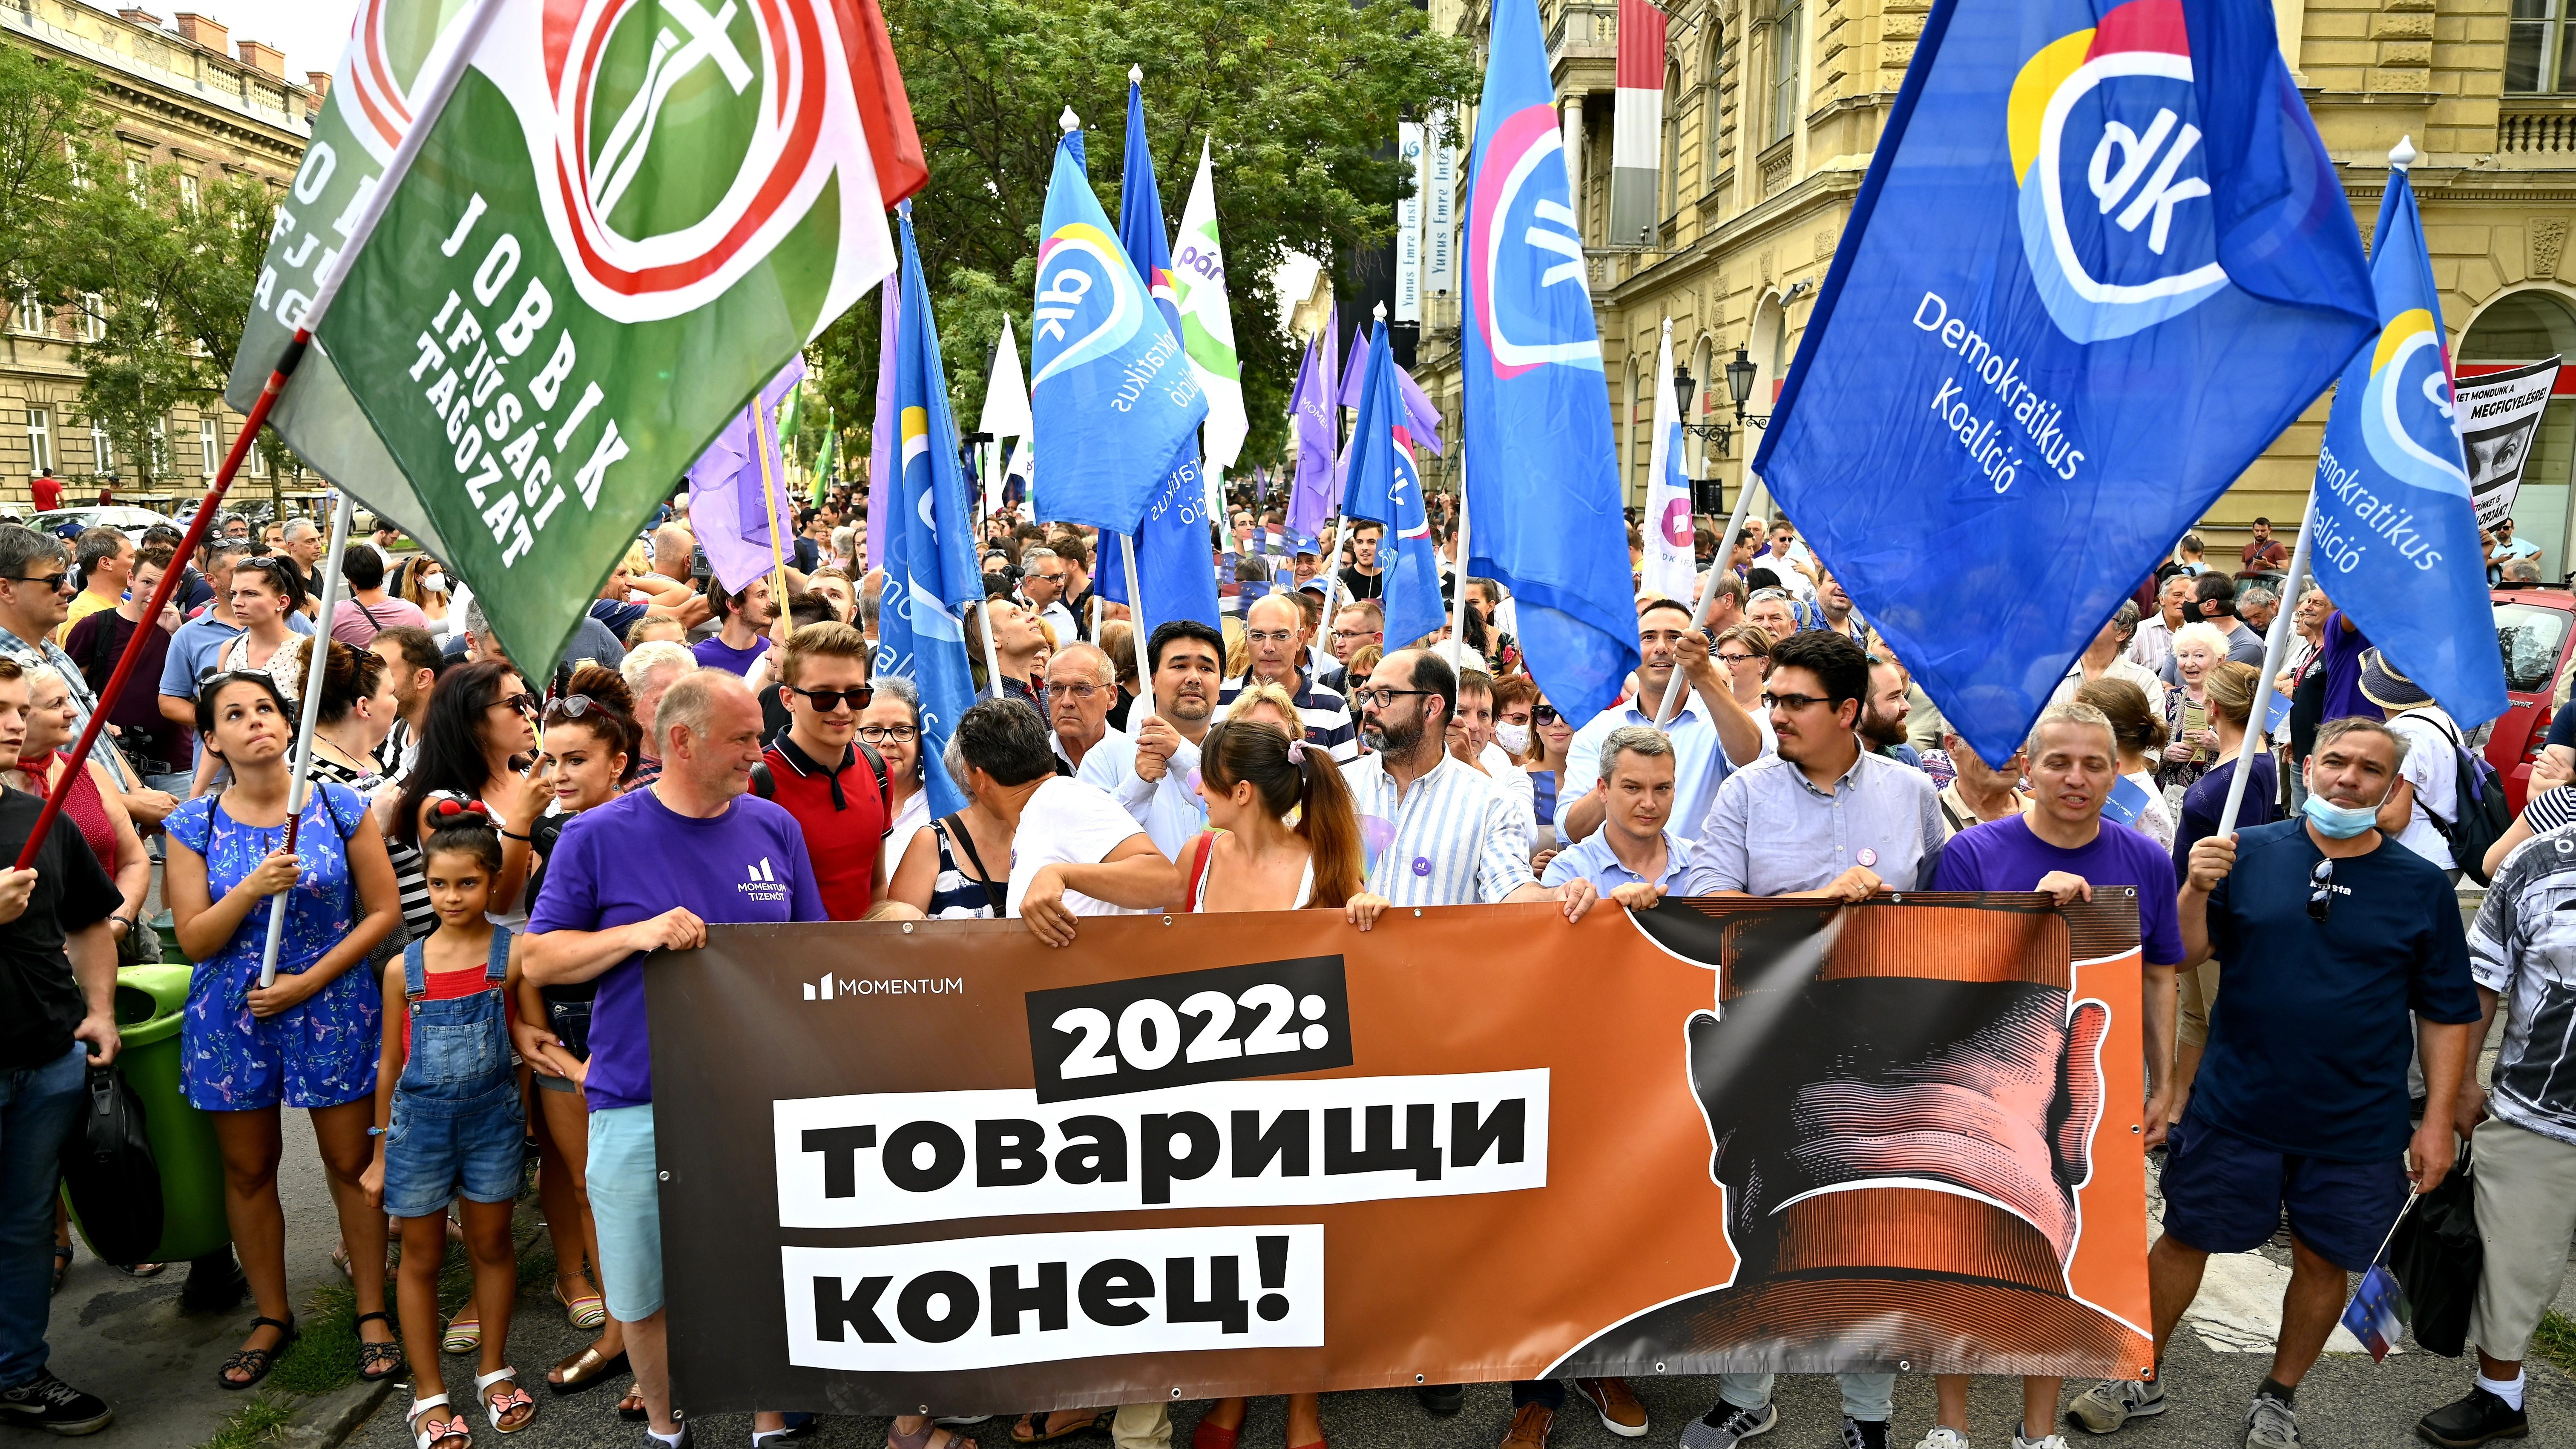 A lehallgatási botrány miatt tüntetnek Budapesten